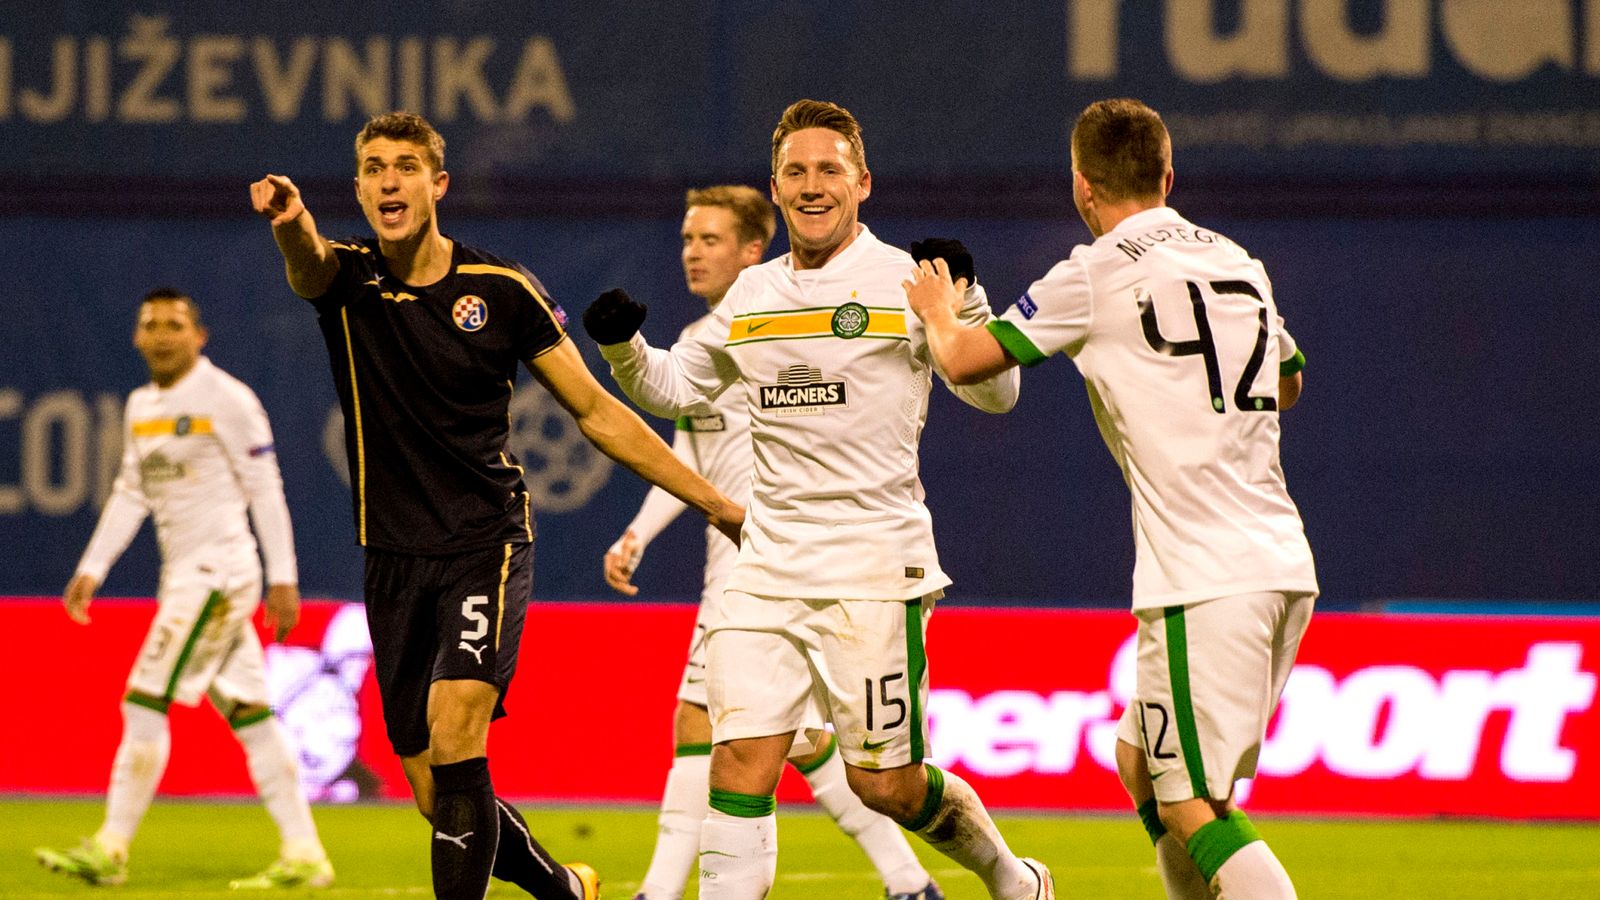 Din Zagreb 4 - 3 Celtic - Match Report & Highlights1600 x 900